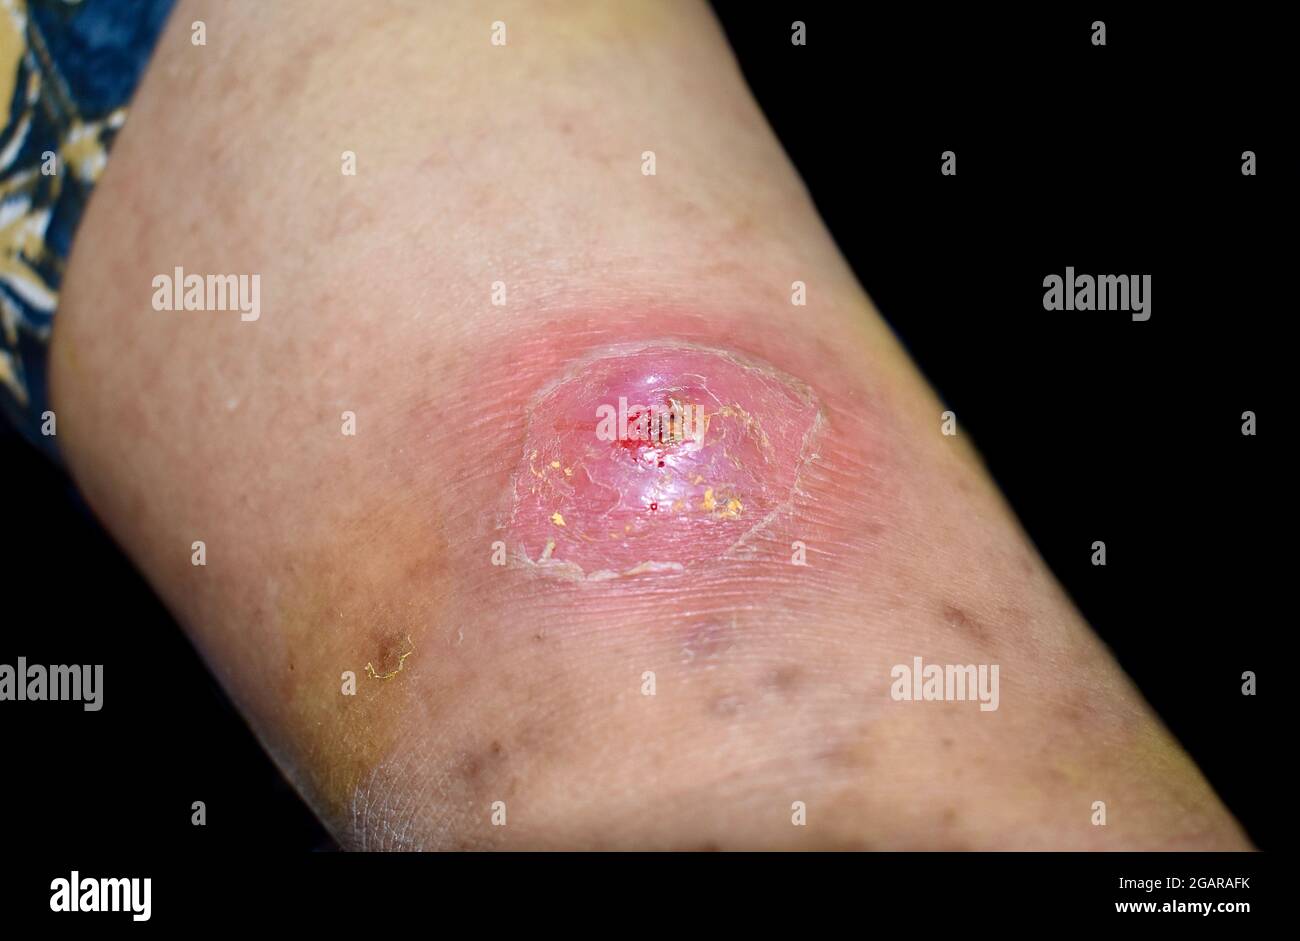 Abcès imminent avec cellulite environnante ou infection cutanée  staphylococcique/streptococcique dans la jambe droite du patient birman  asiatique. Vue latérale. Est Photo Stock - Alamy